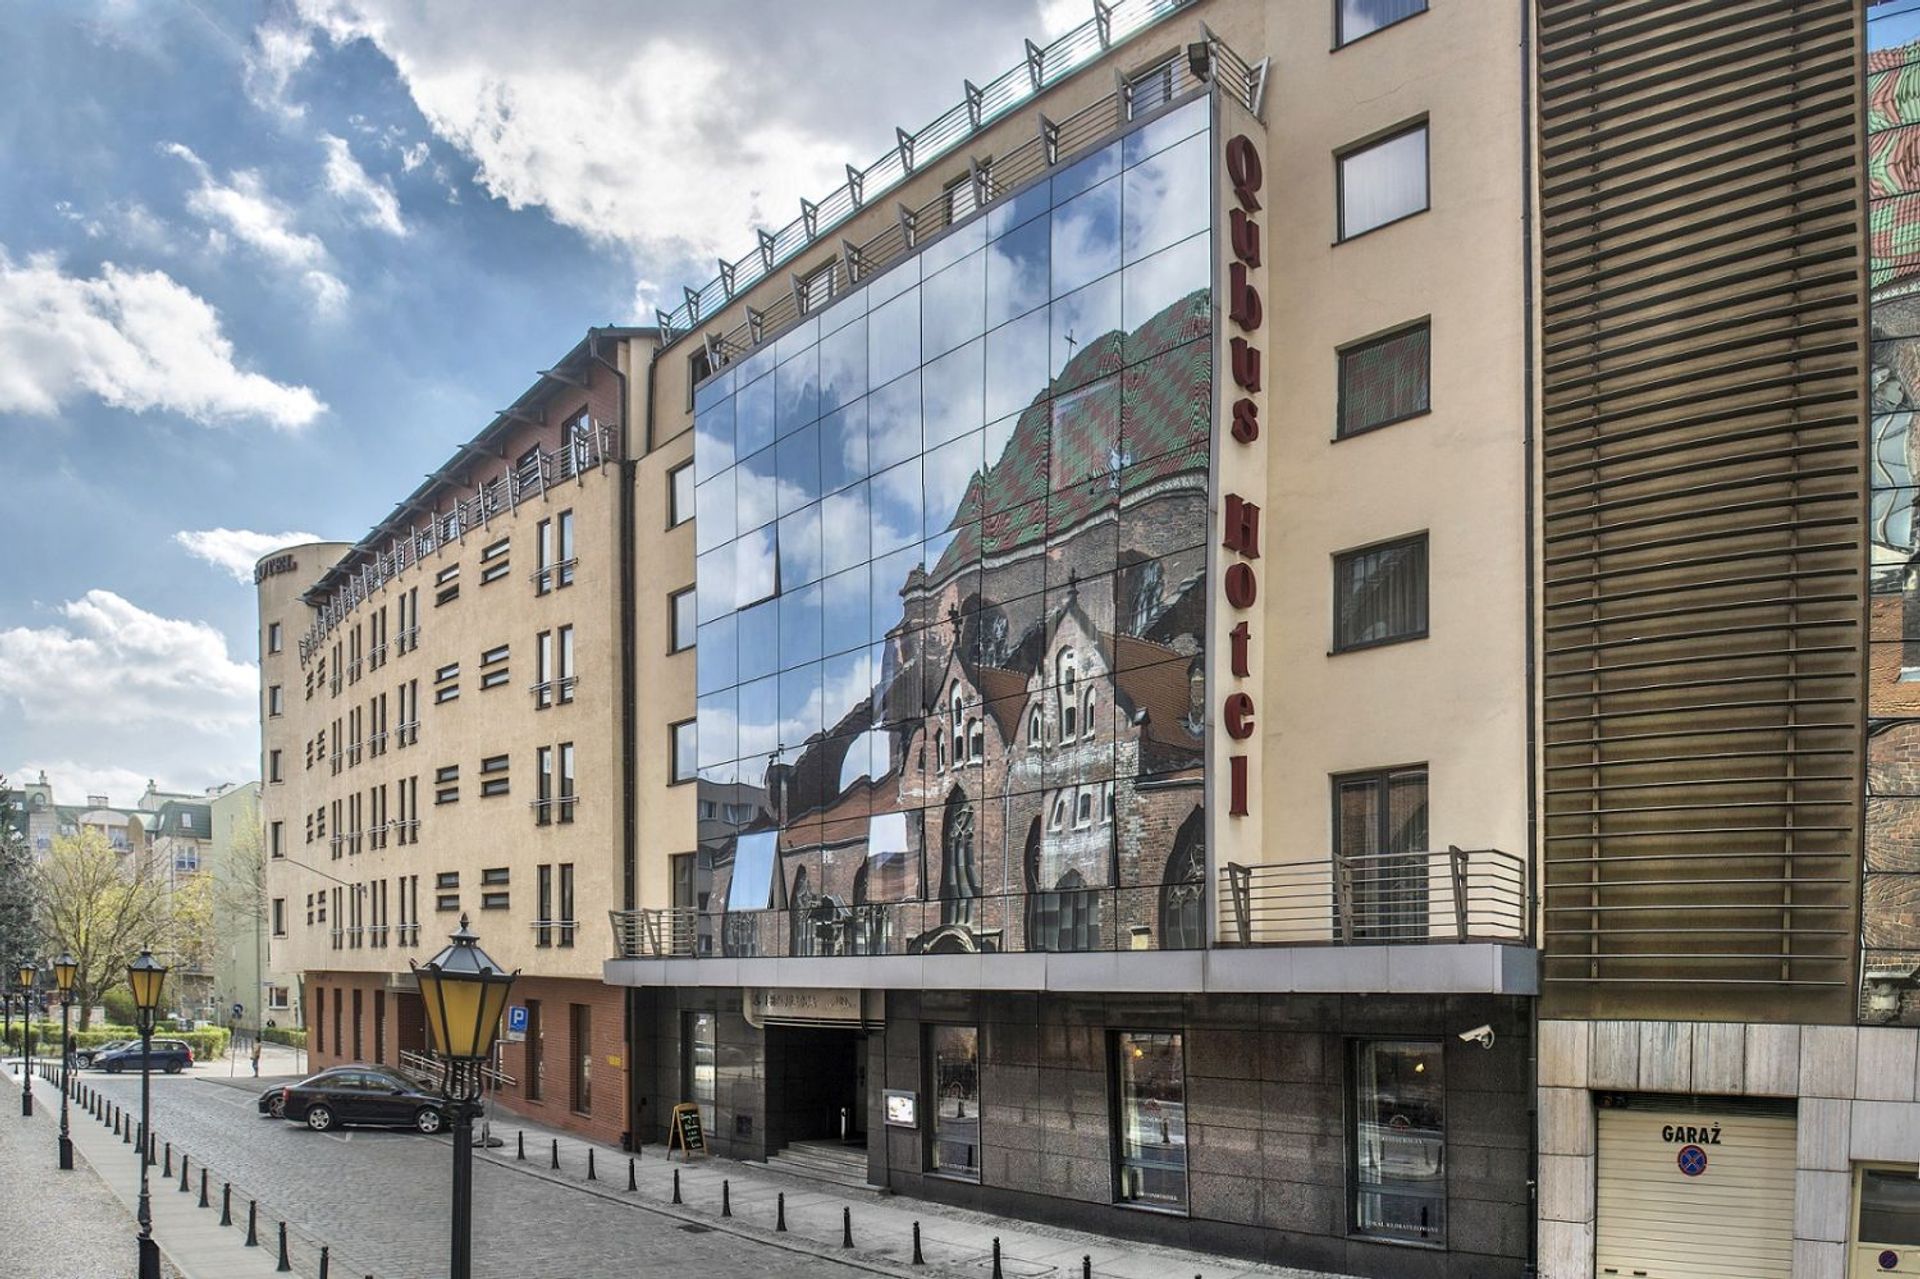  Jeden z najbardziej znanych hoteli we Wrocławiu obchodzi swoje 15-lecie